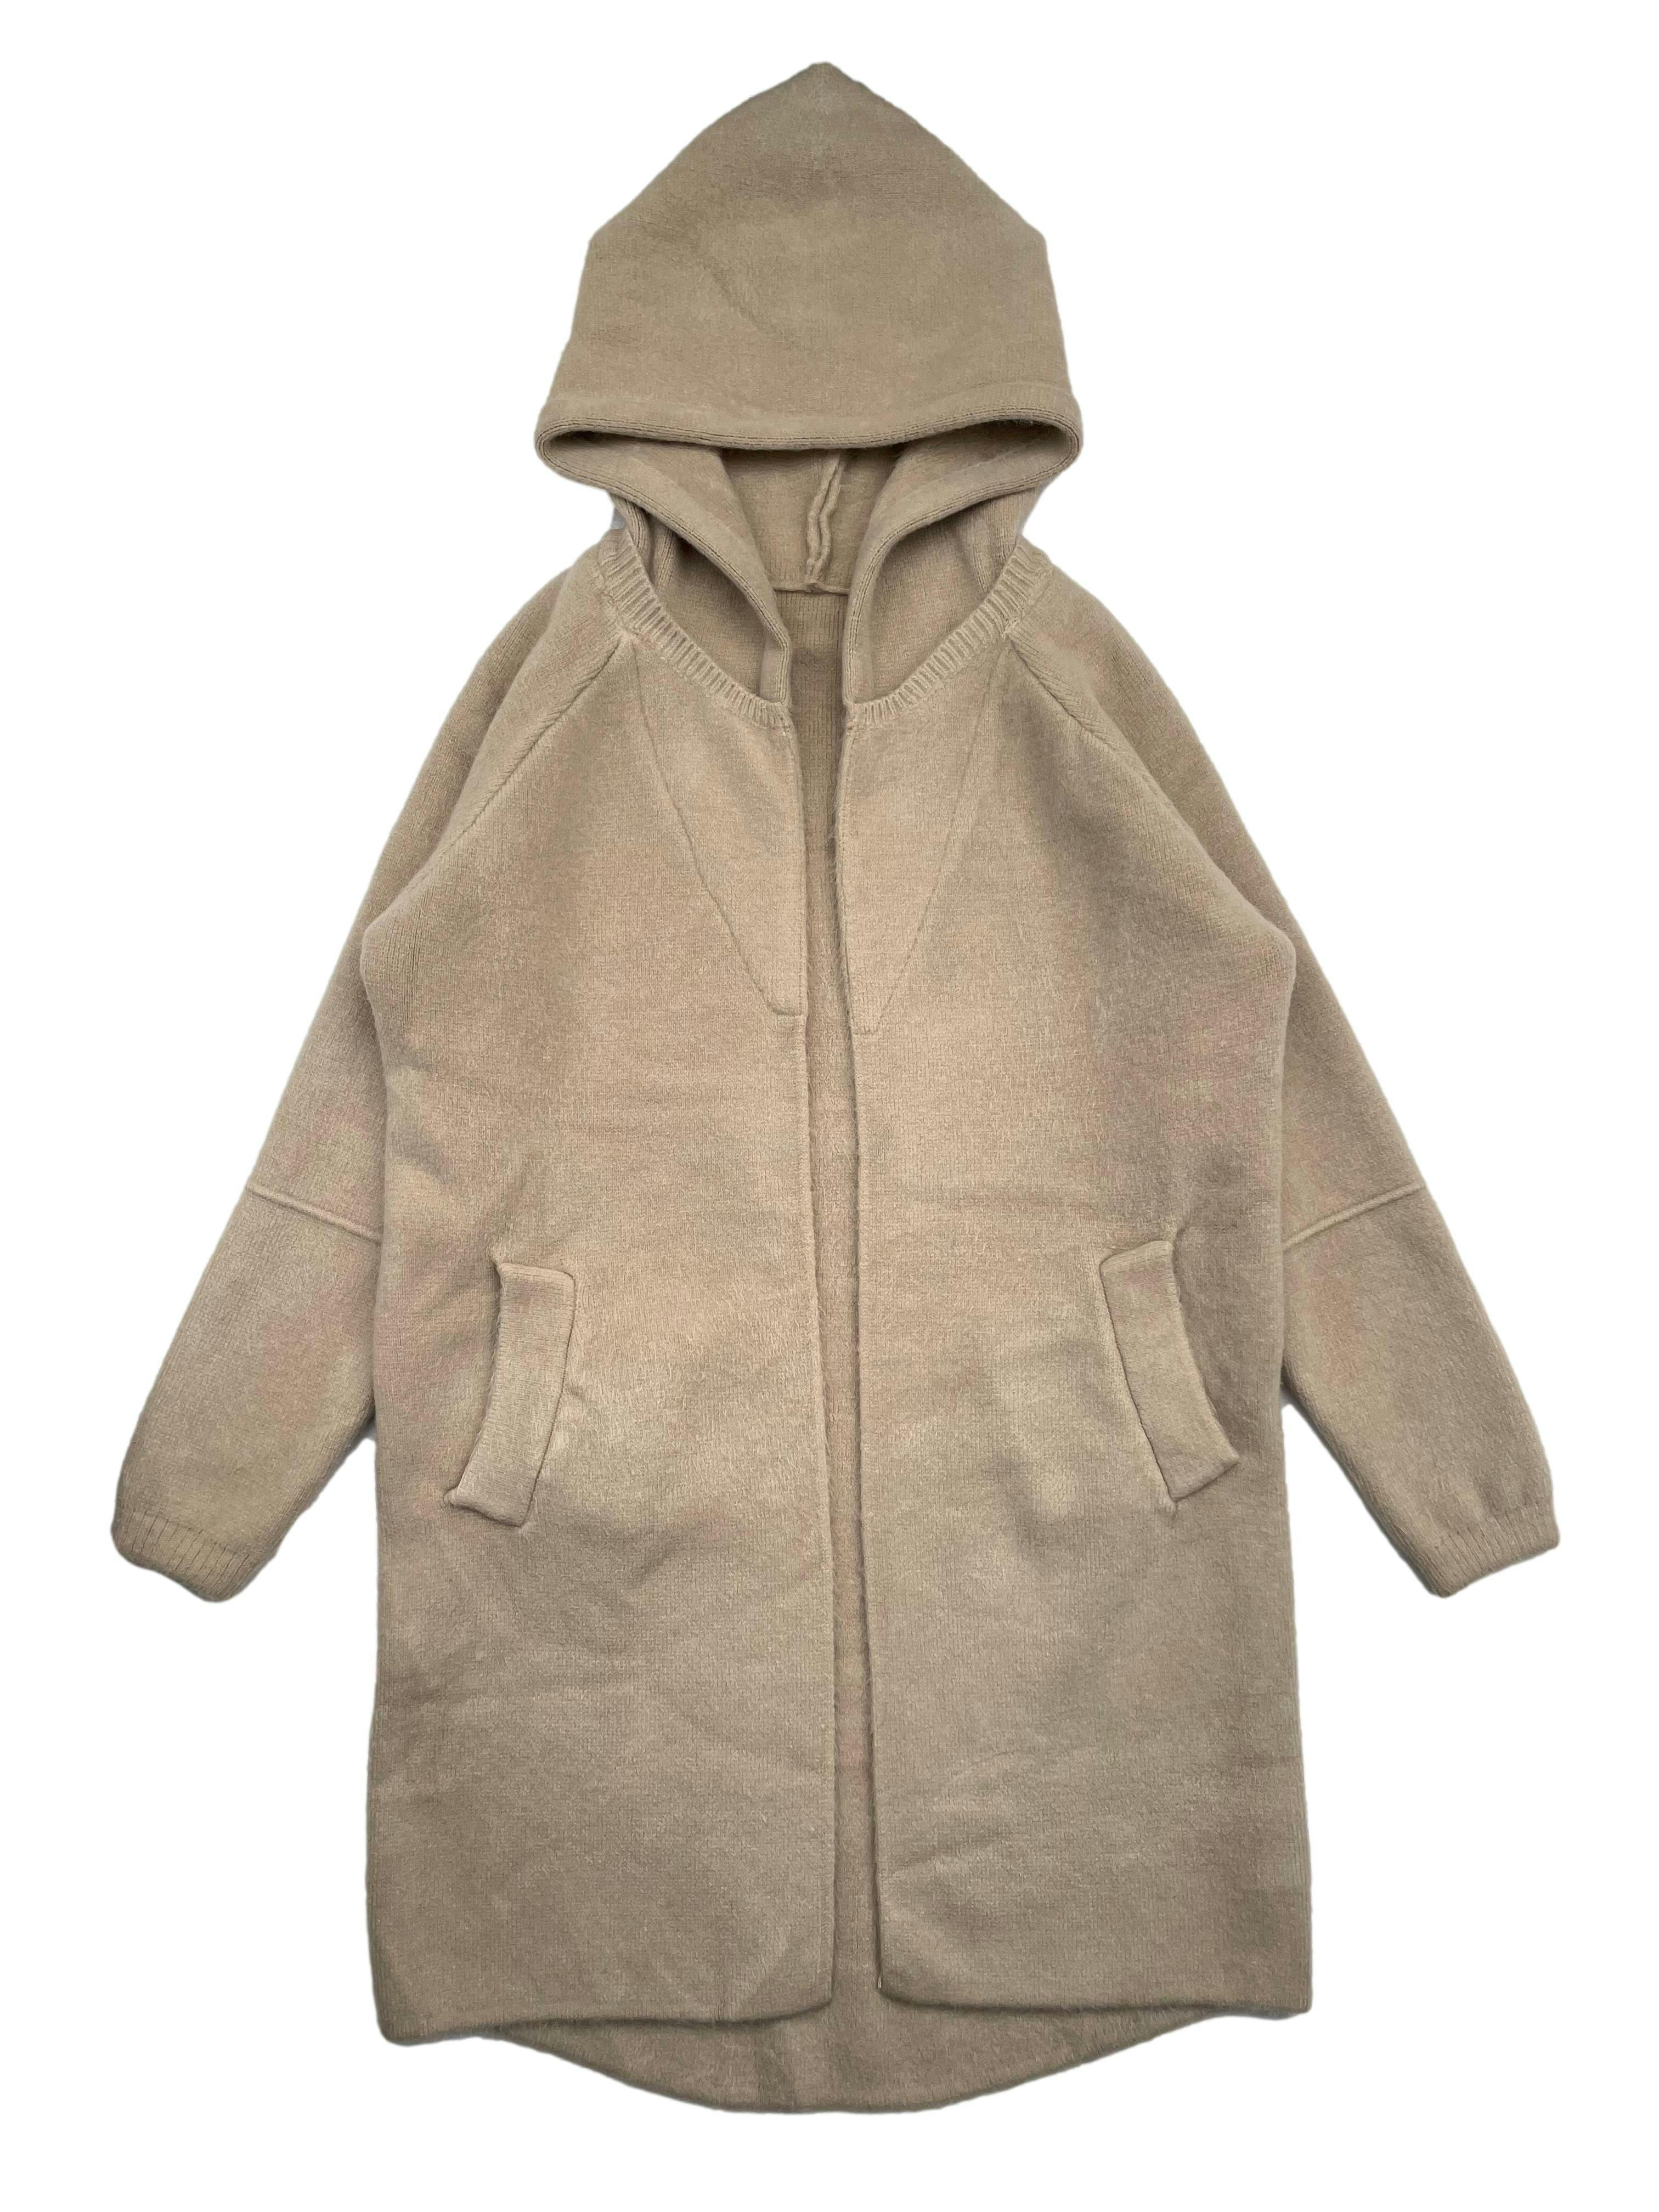 Abrigo beige tejido cerrado, modelo abierto con capucha y bolsillos frontales. Tiene estructura y es pesado, muy abrigor. Busto 116cm, Largo 88cm.